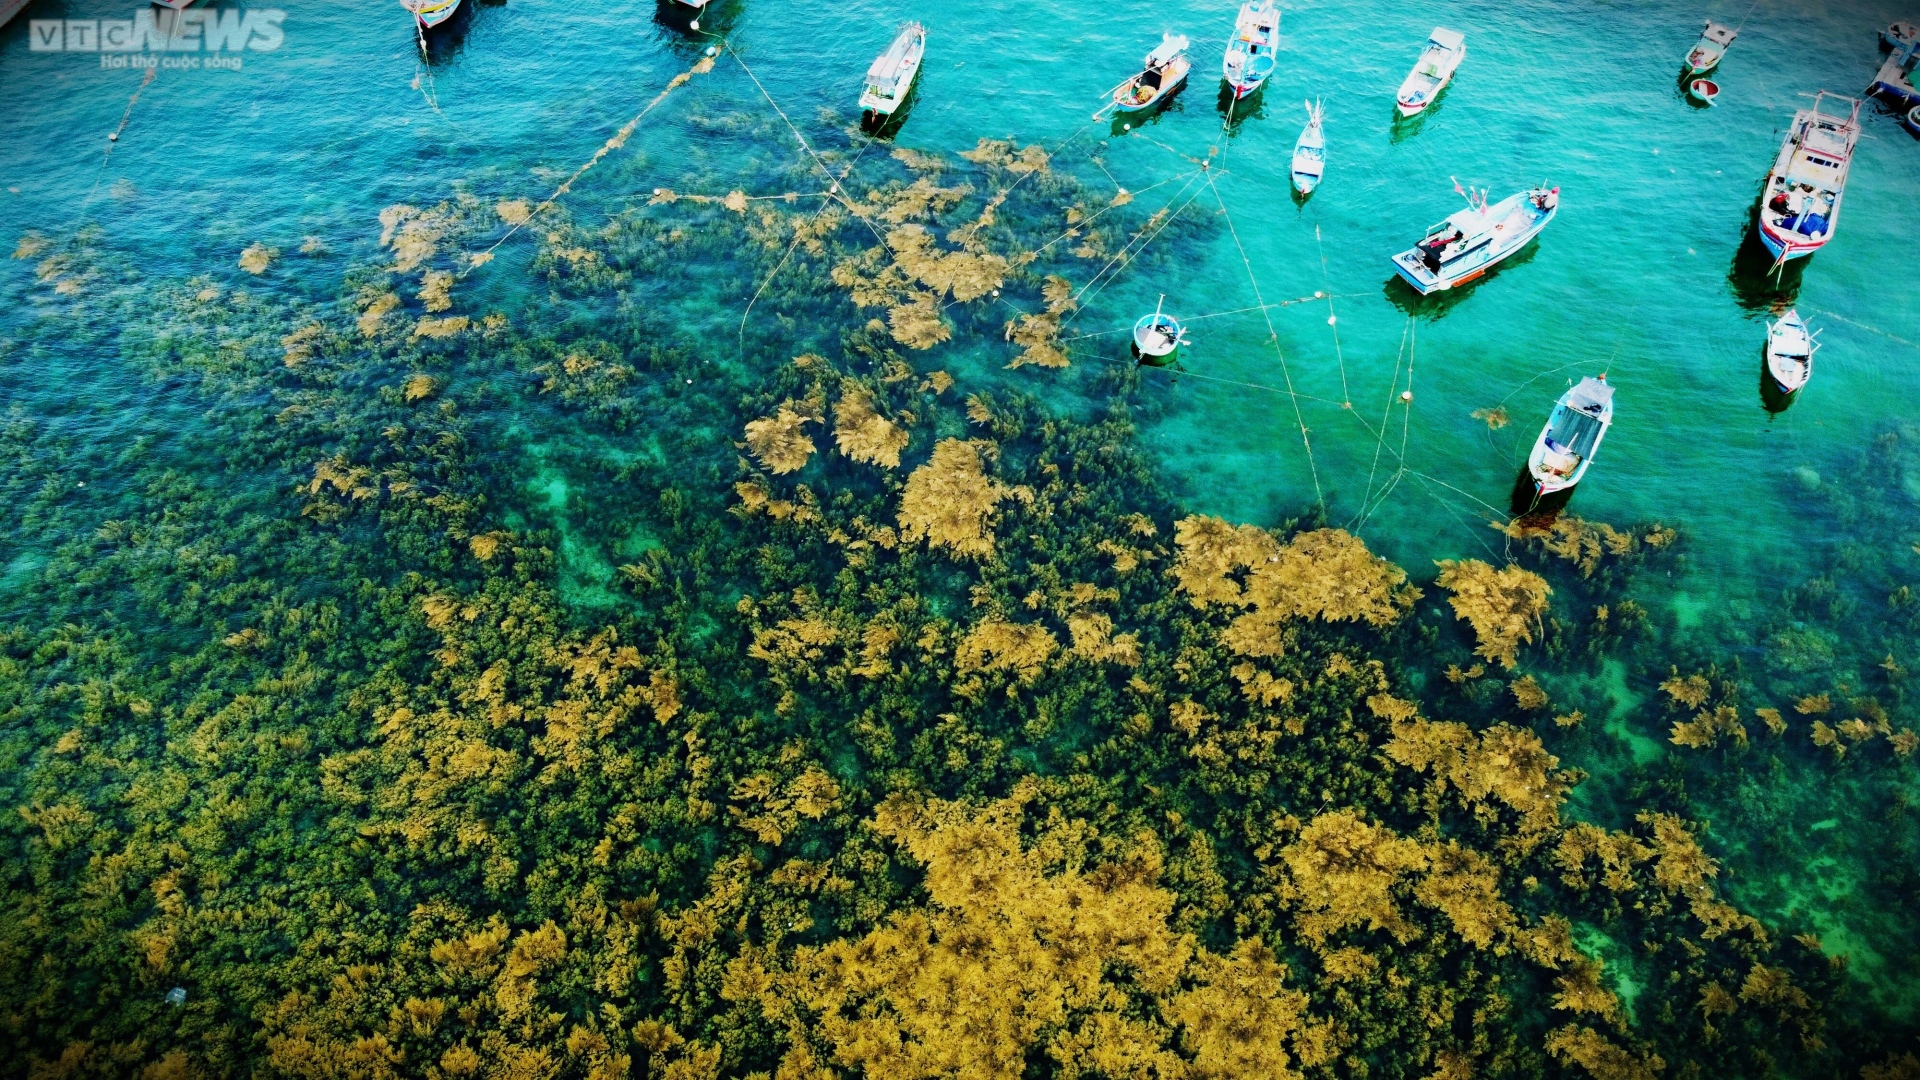 Ngất ngây 'cánh đồng vàng' dưới biển xanh trong ở đảo Hòn Khô, Bình Định - Ảnh 2.